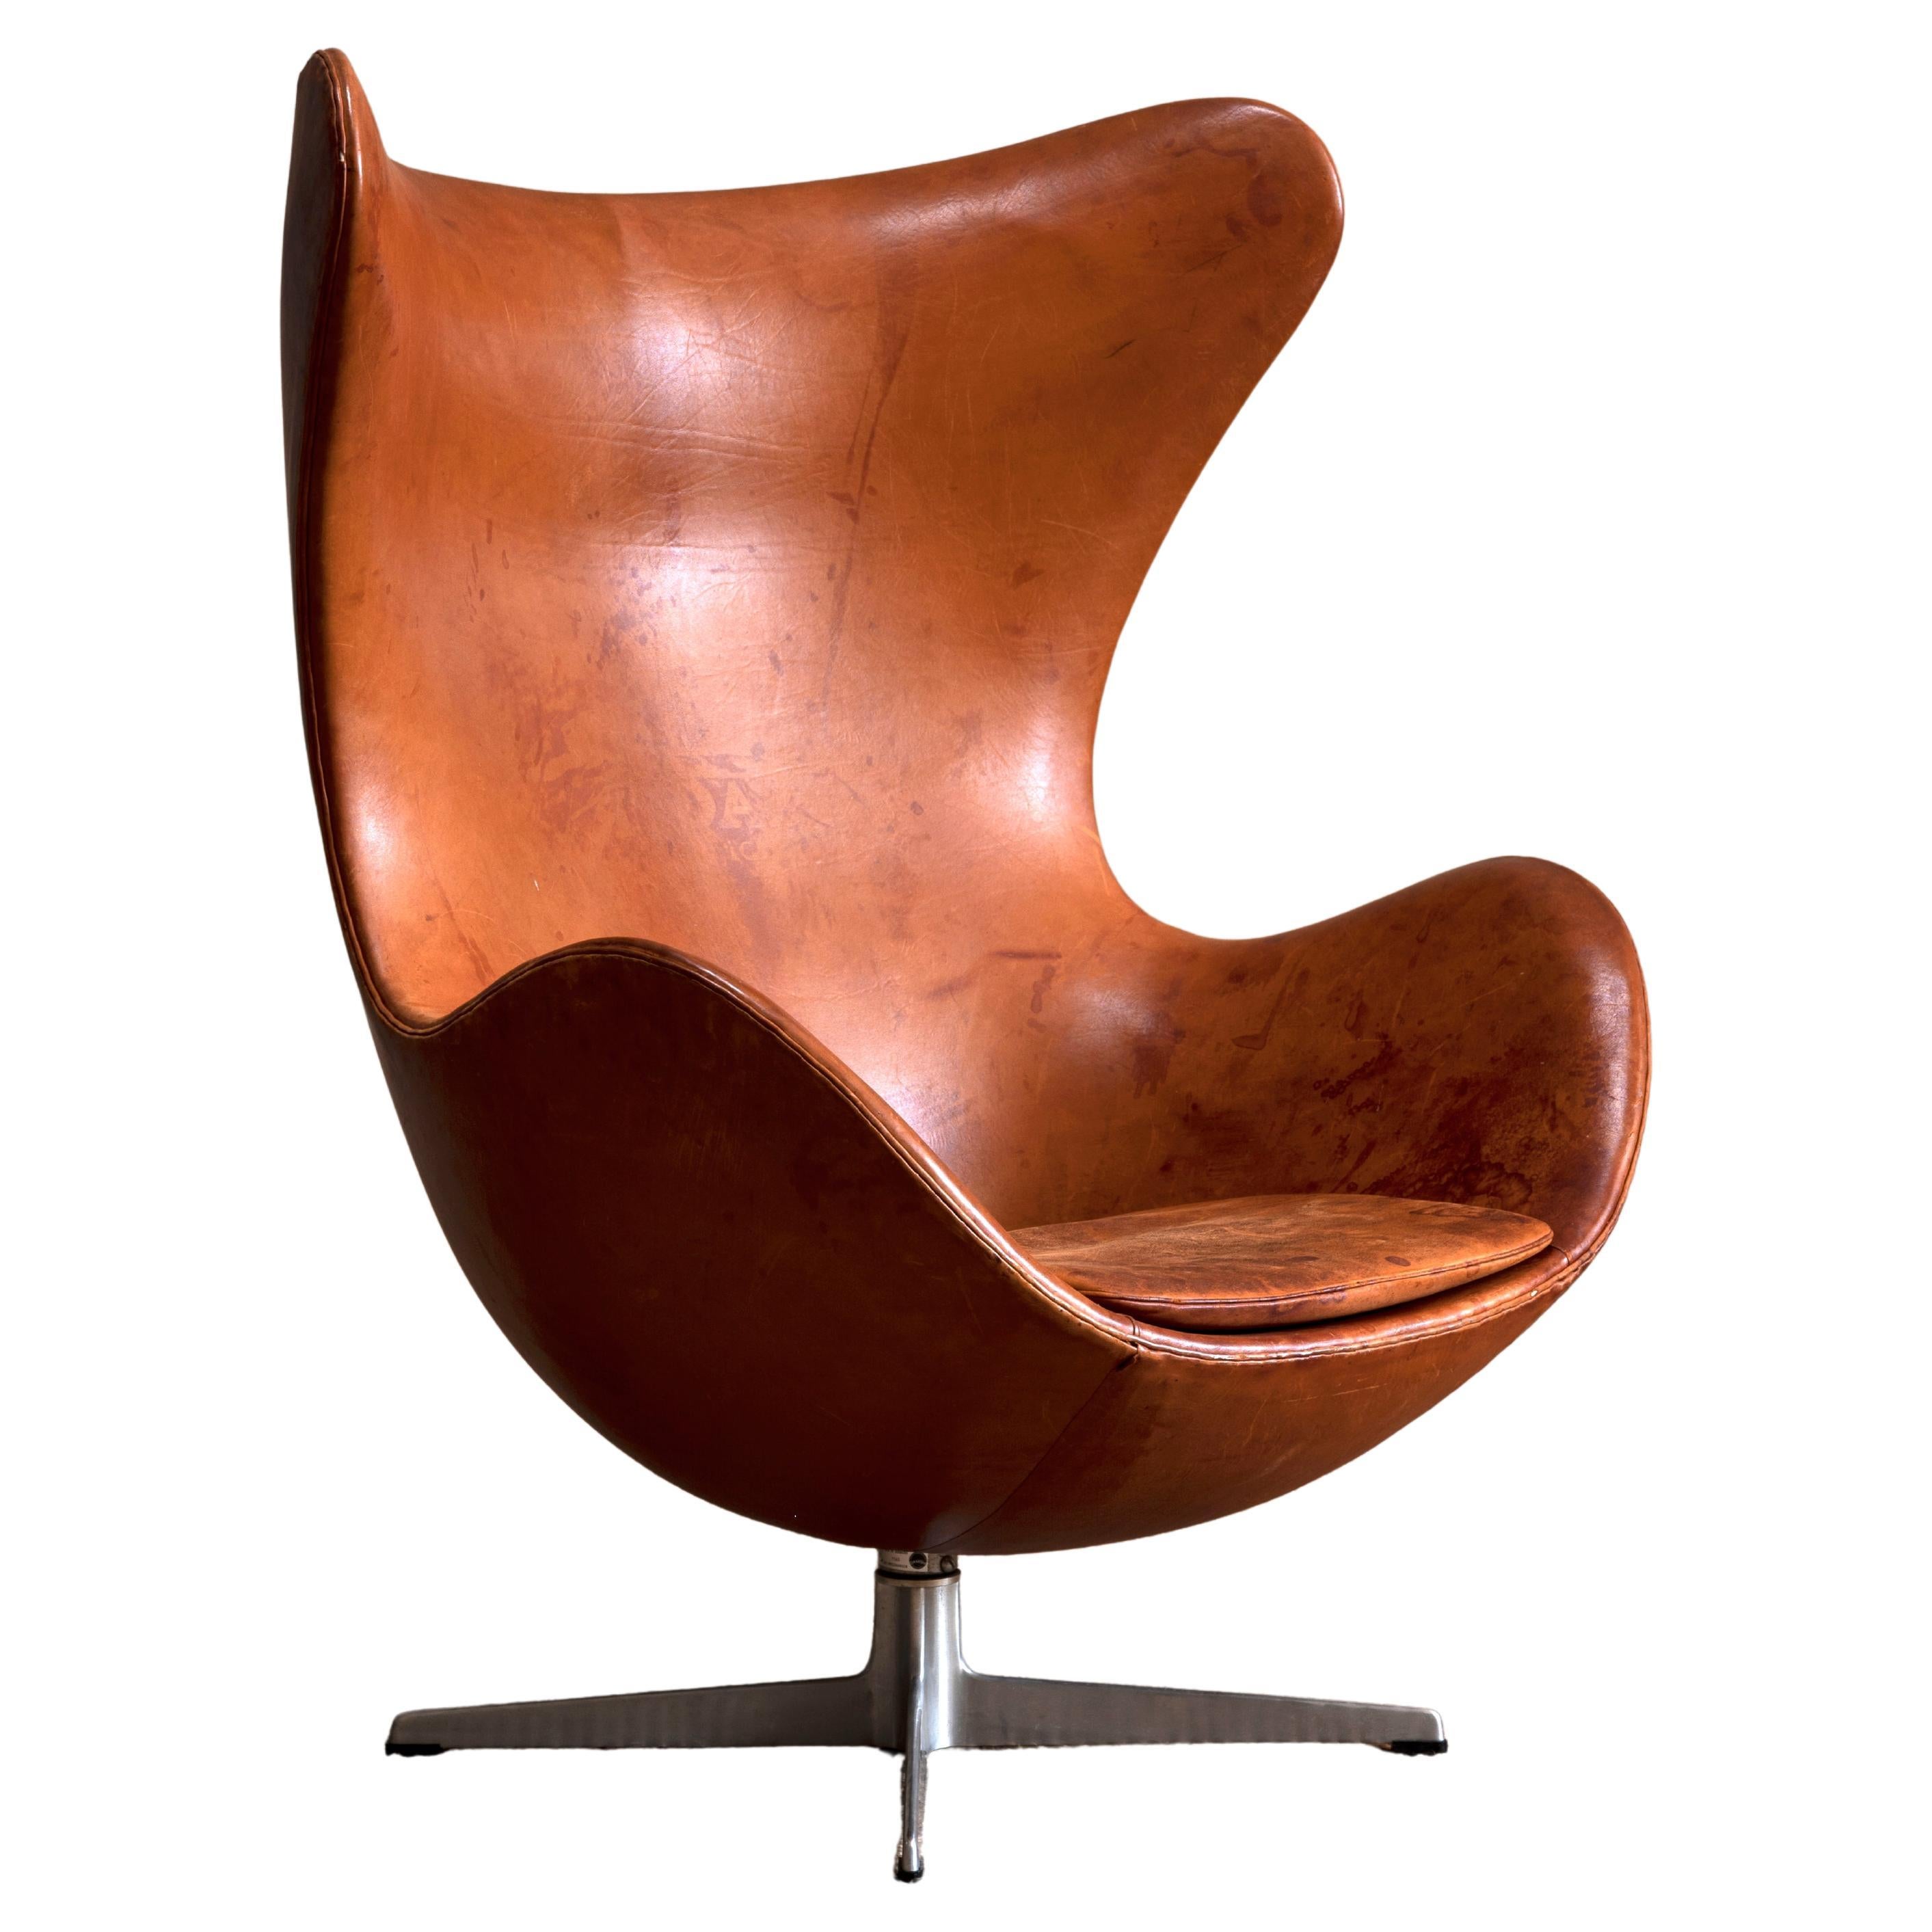 Arne Jacobson 'Egg' Chair for Fritz Hansen, 1958